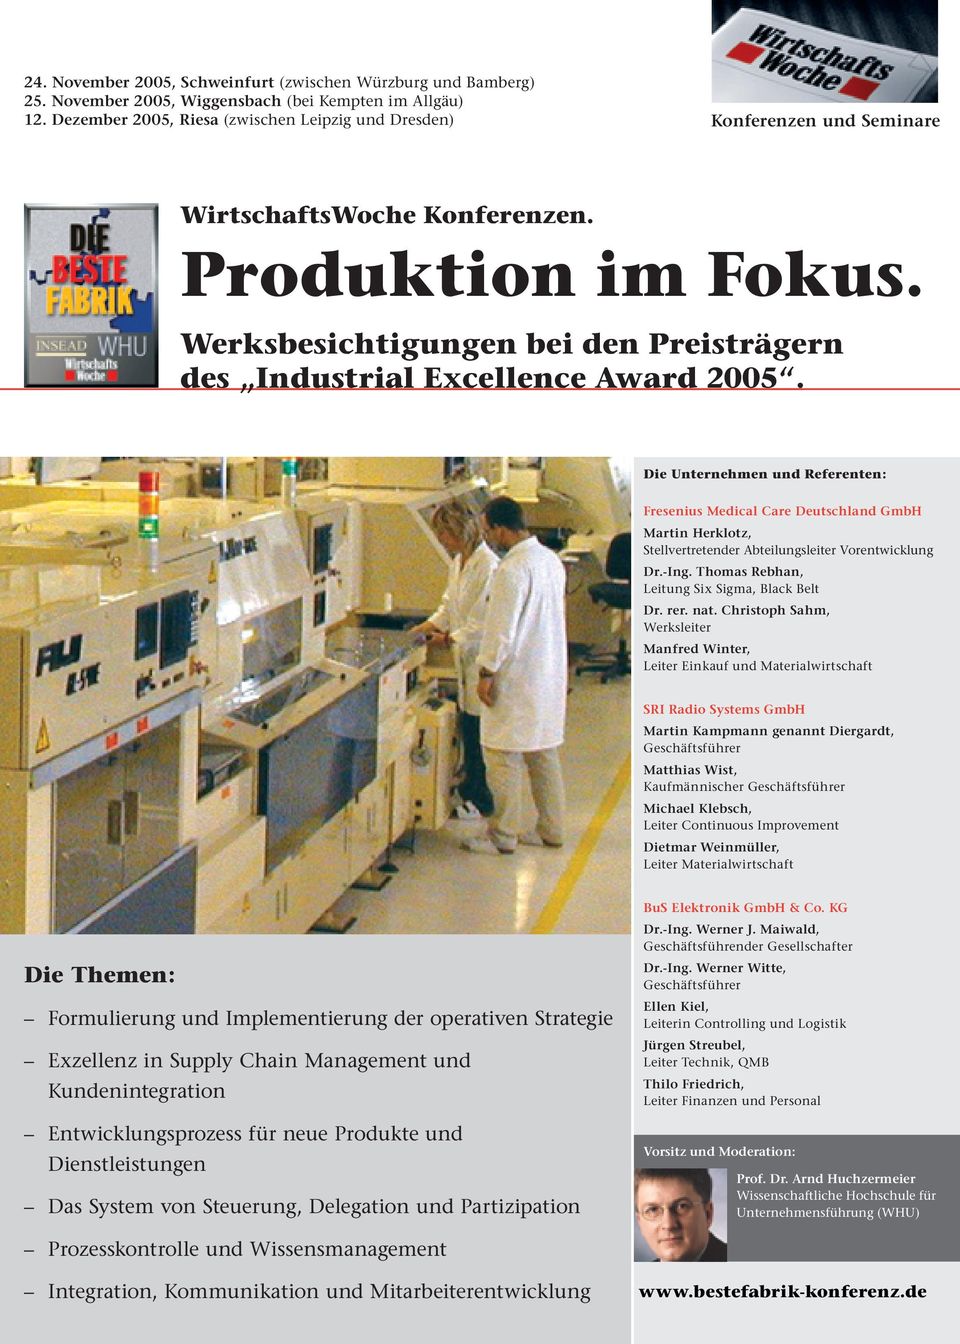 Werksbesichtigungen bei den Preisträgern des Industrial Excellence Award 2005.